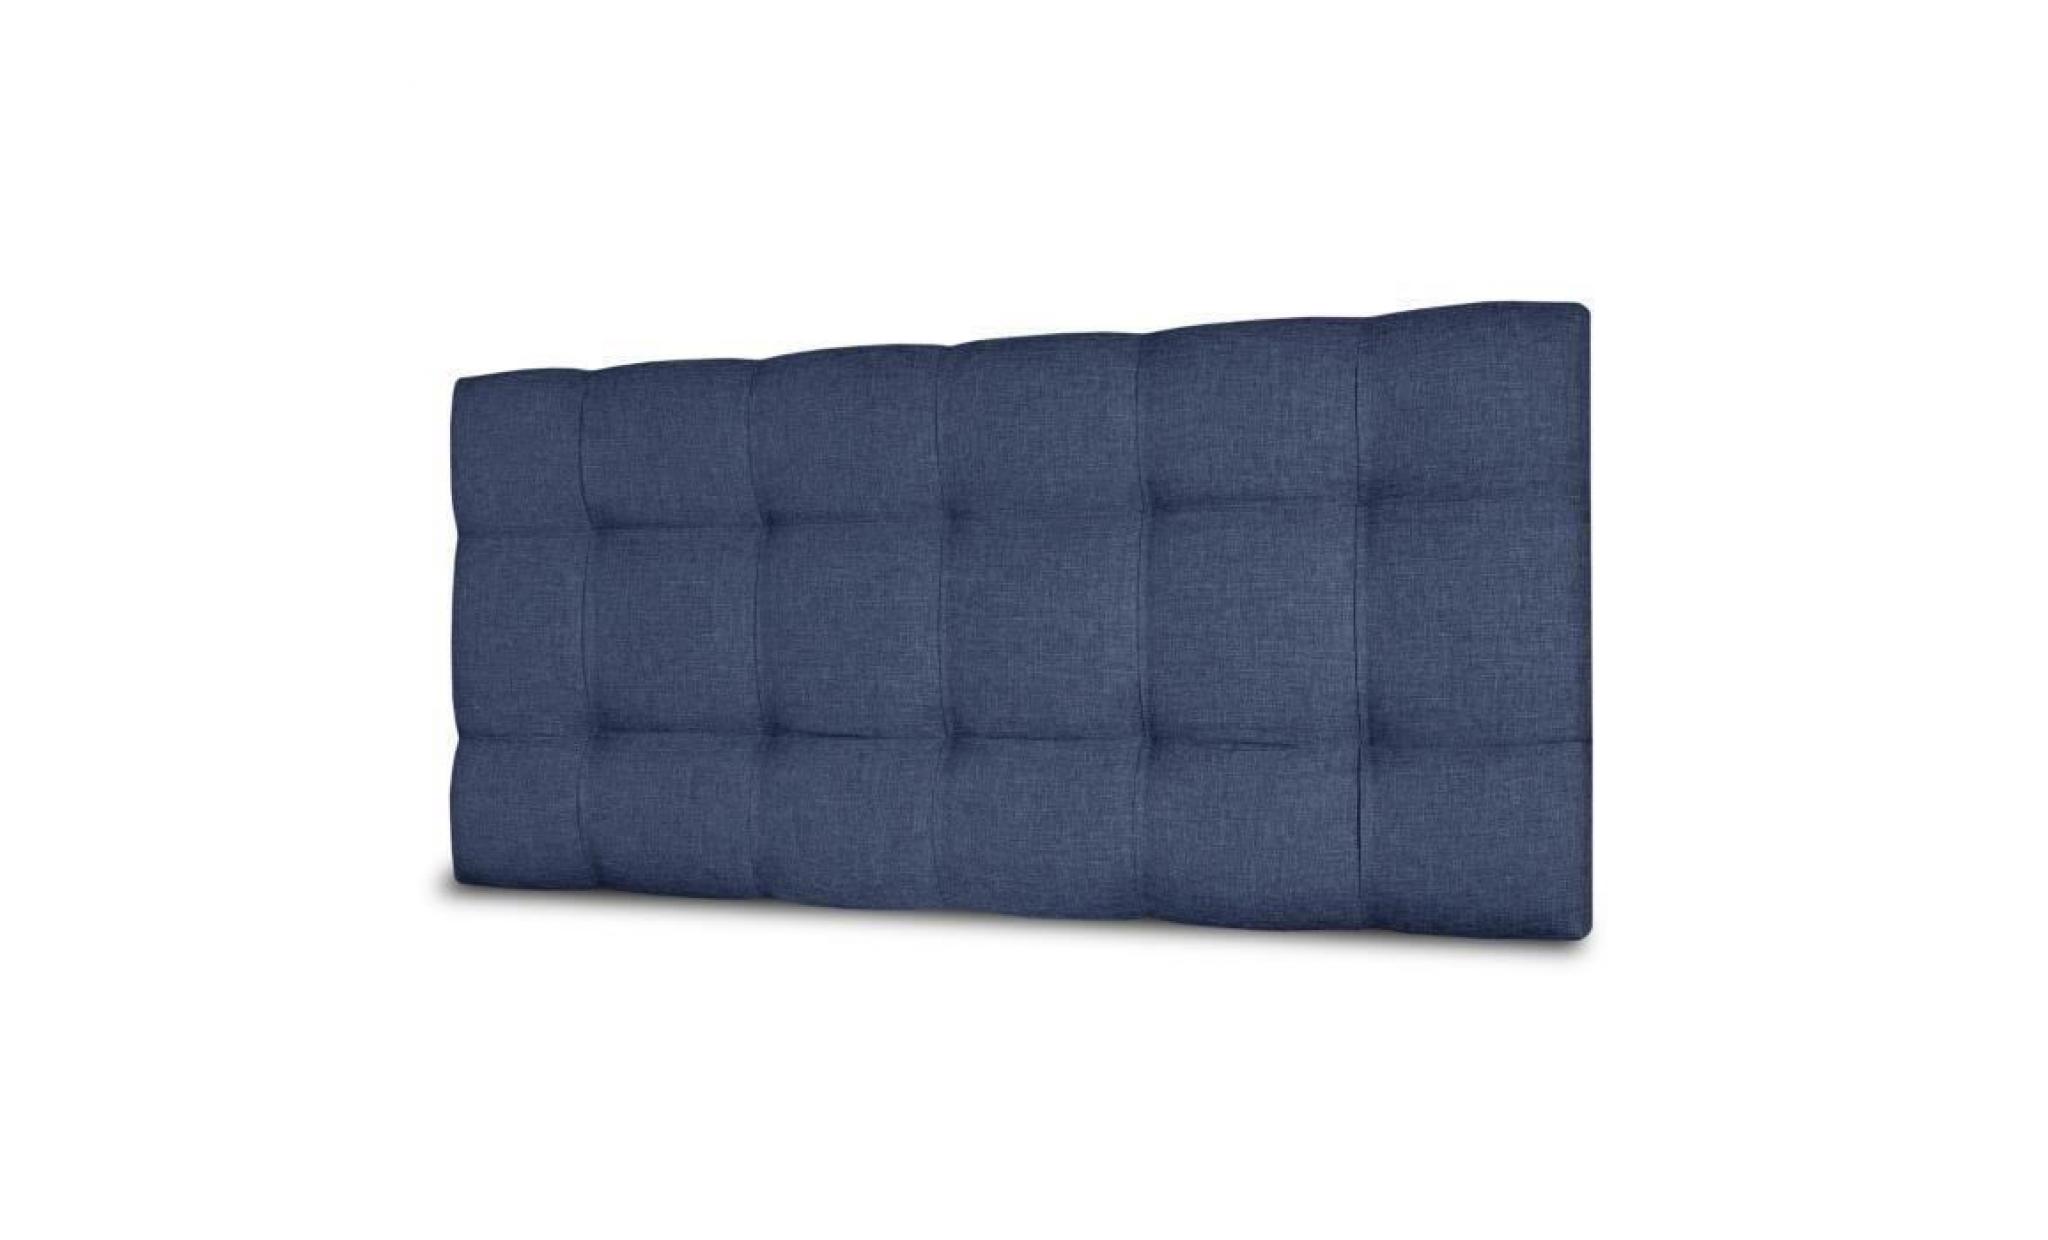 finlandek tête de lit kyna classique   tissu bleu denim   l 160 cm pas cher